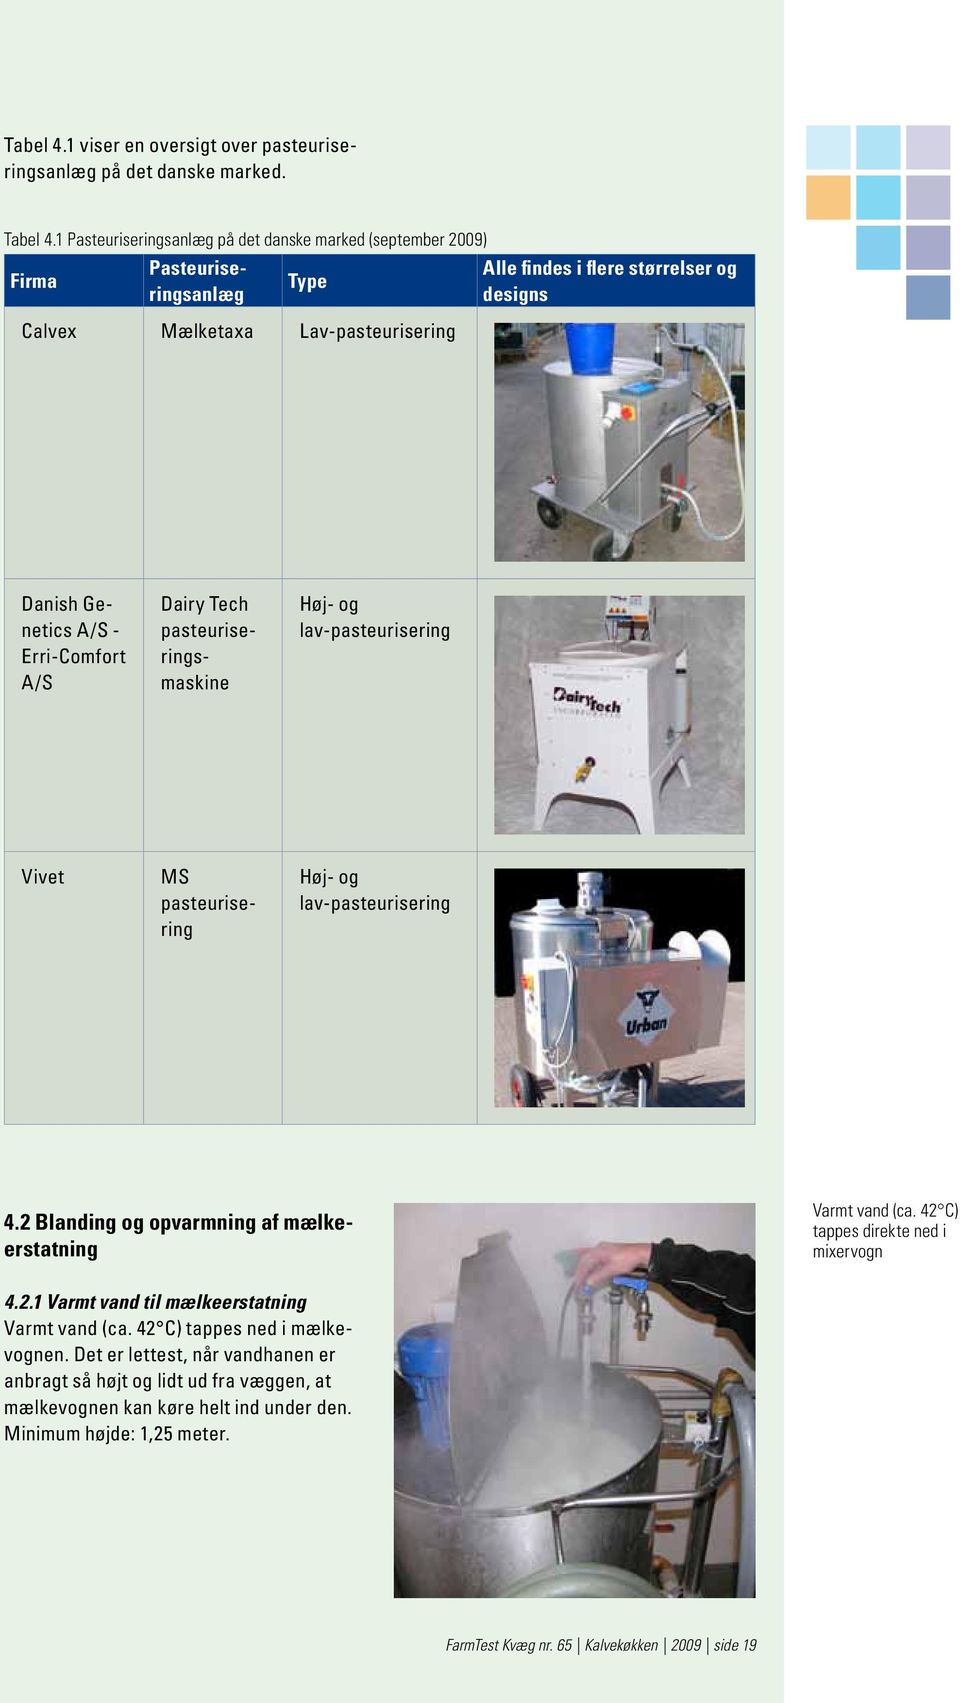 Erri-Comfort A/S Dairy Tech pasteuriseringsmaskine Høj- og lav-pasteurisering Vivet MS pasteurisering Høj- og lav-pasteurisering 4.2 Blanding og opvarmning af mælkeerstatning Varmt vand (ca.